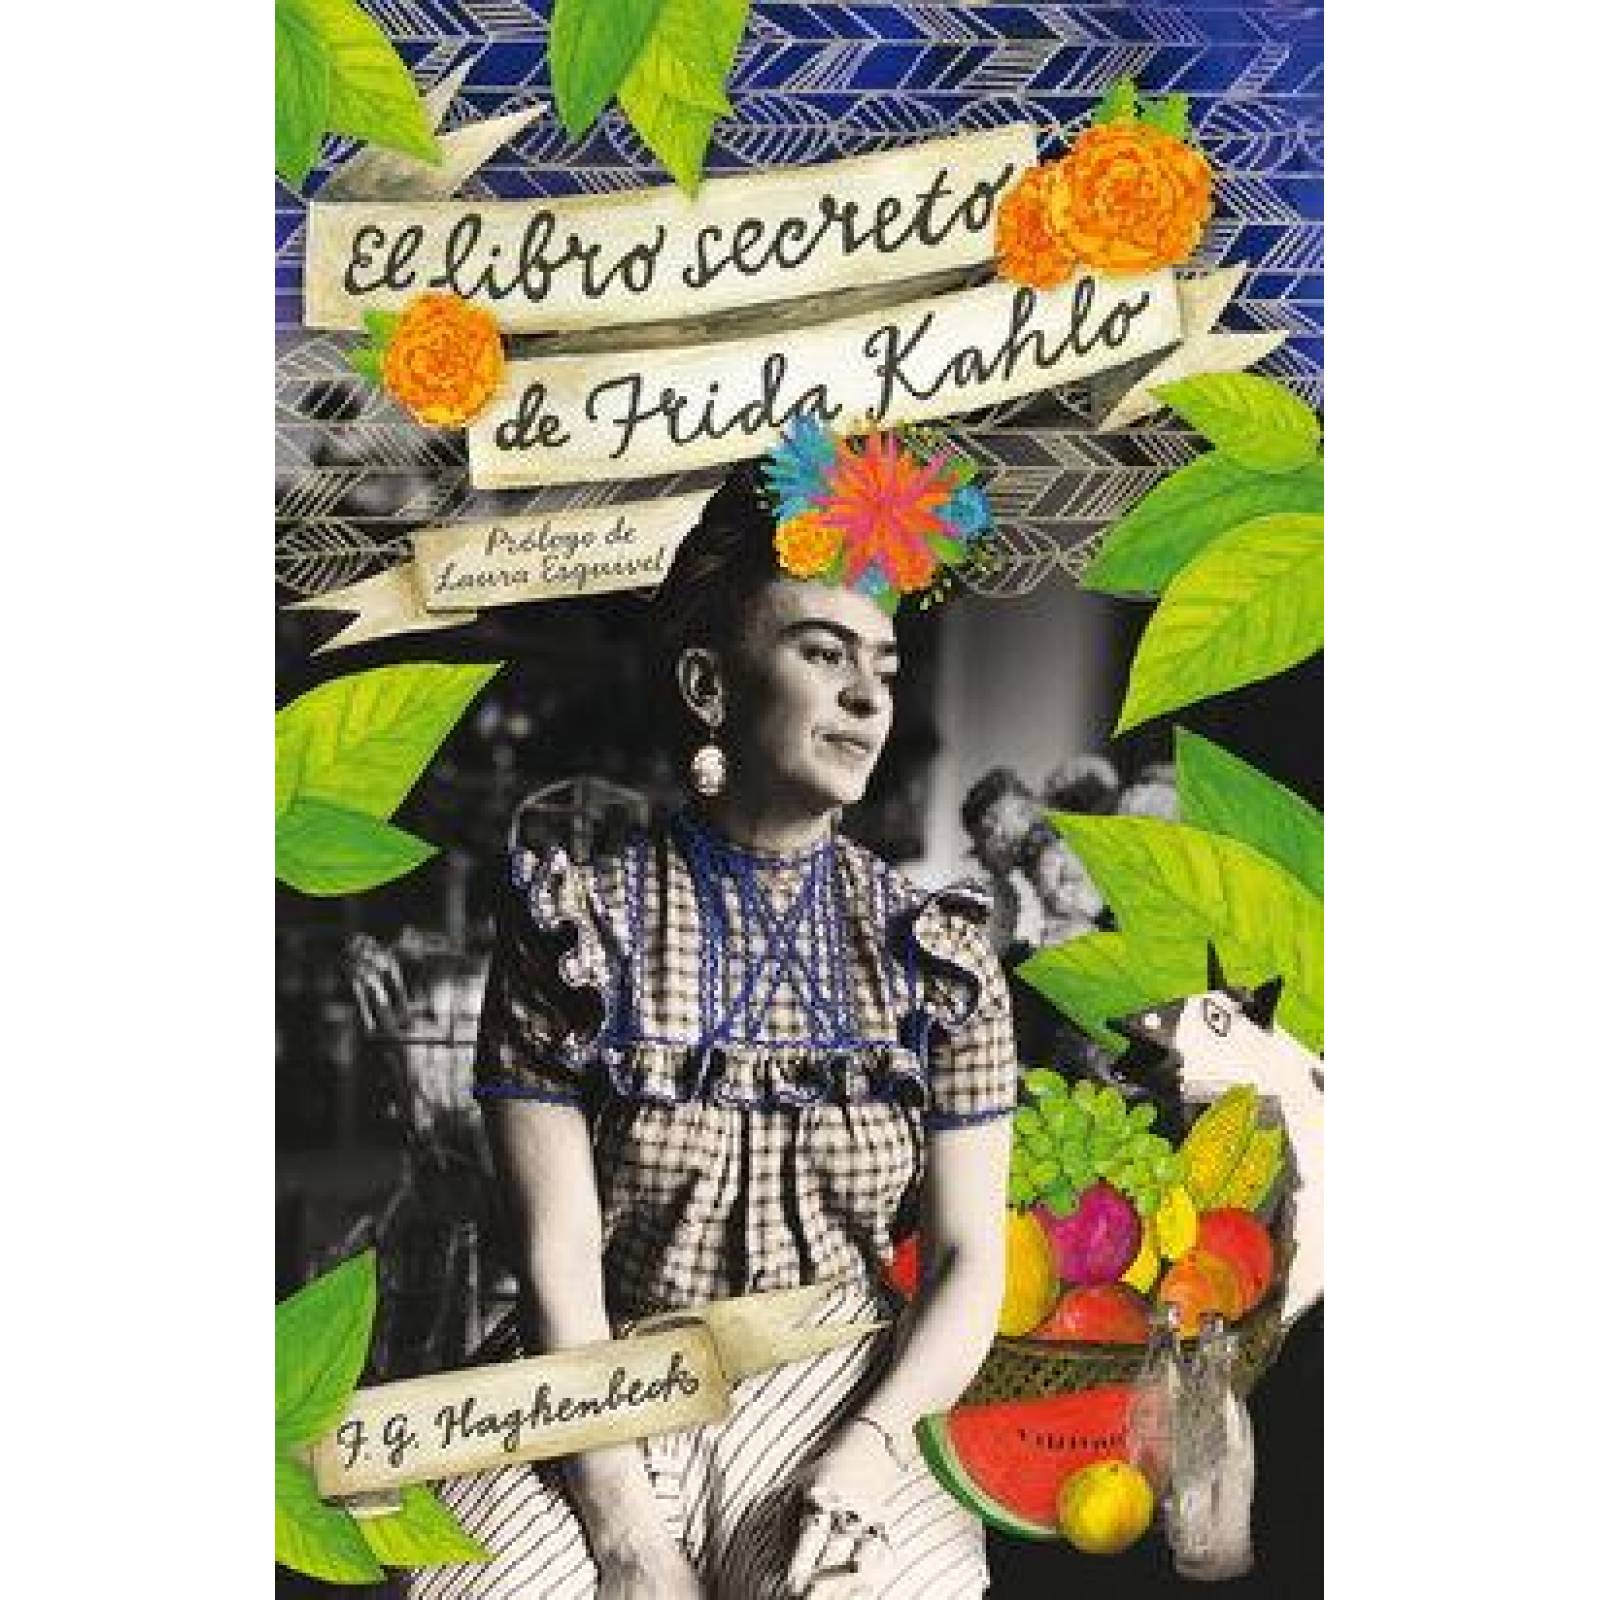 El Libro secreto de Frida Kahlo 